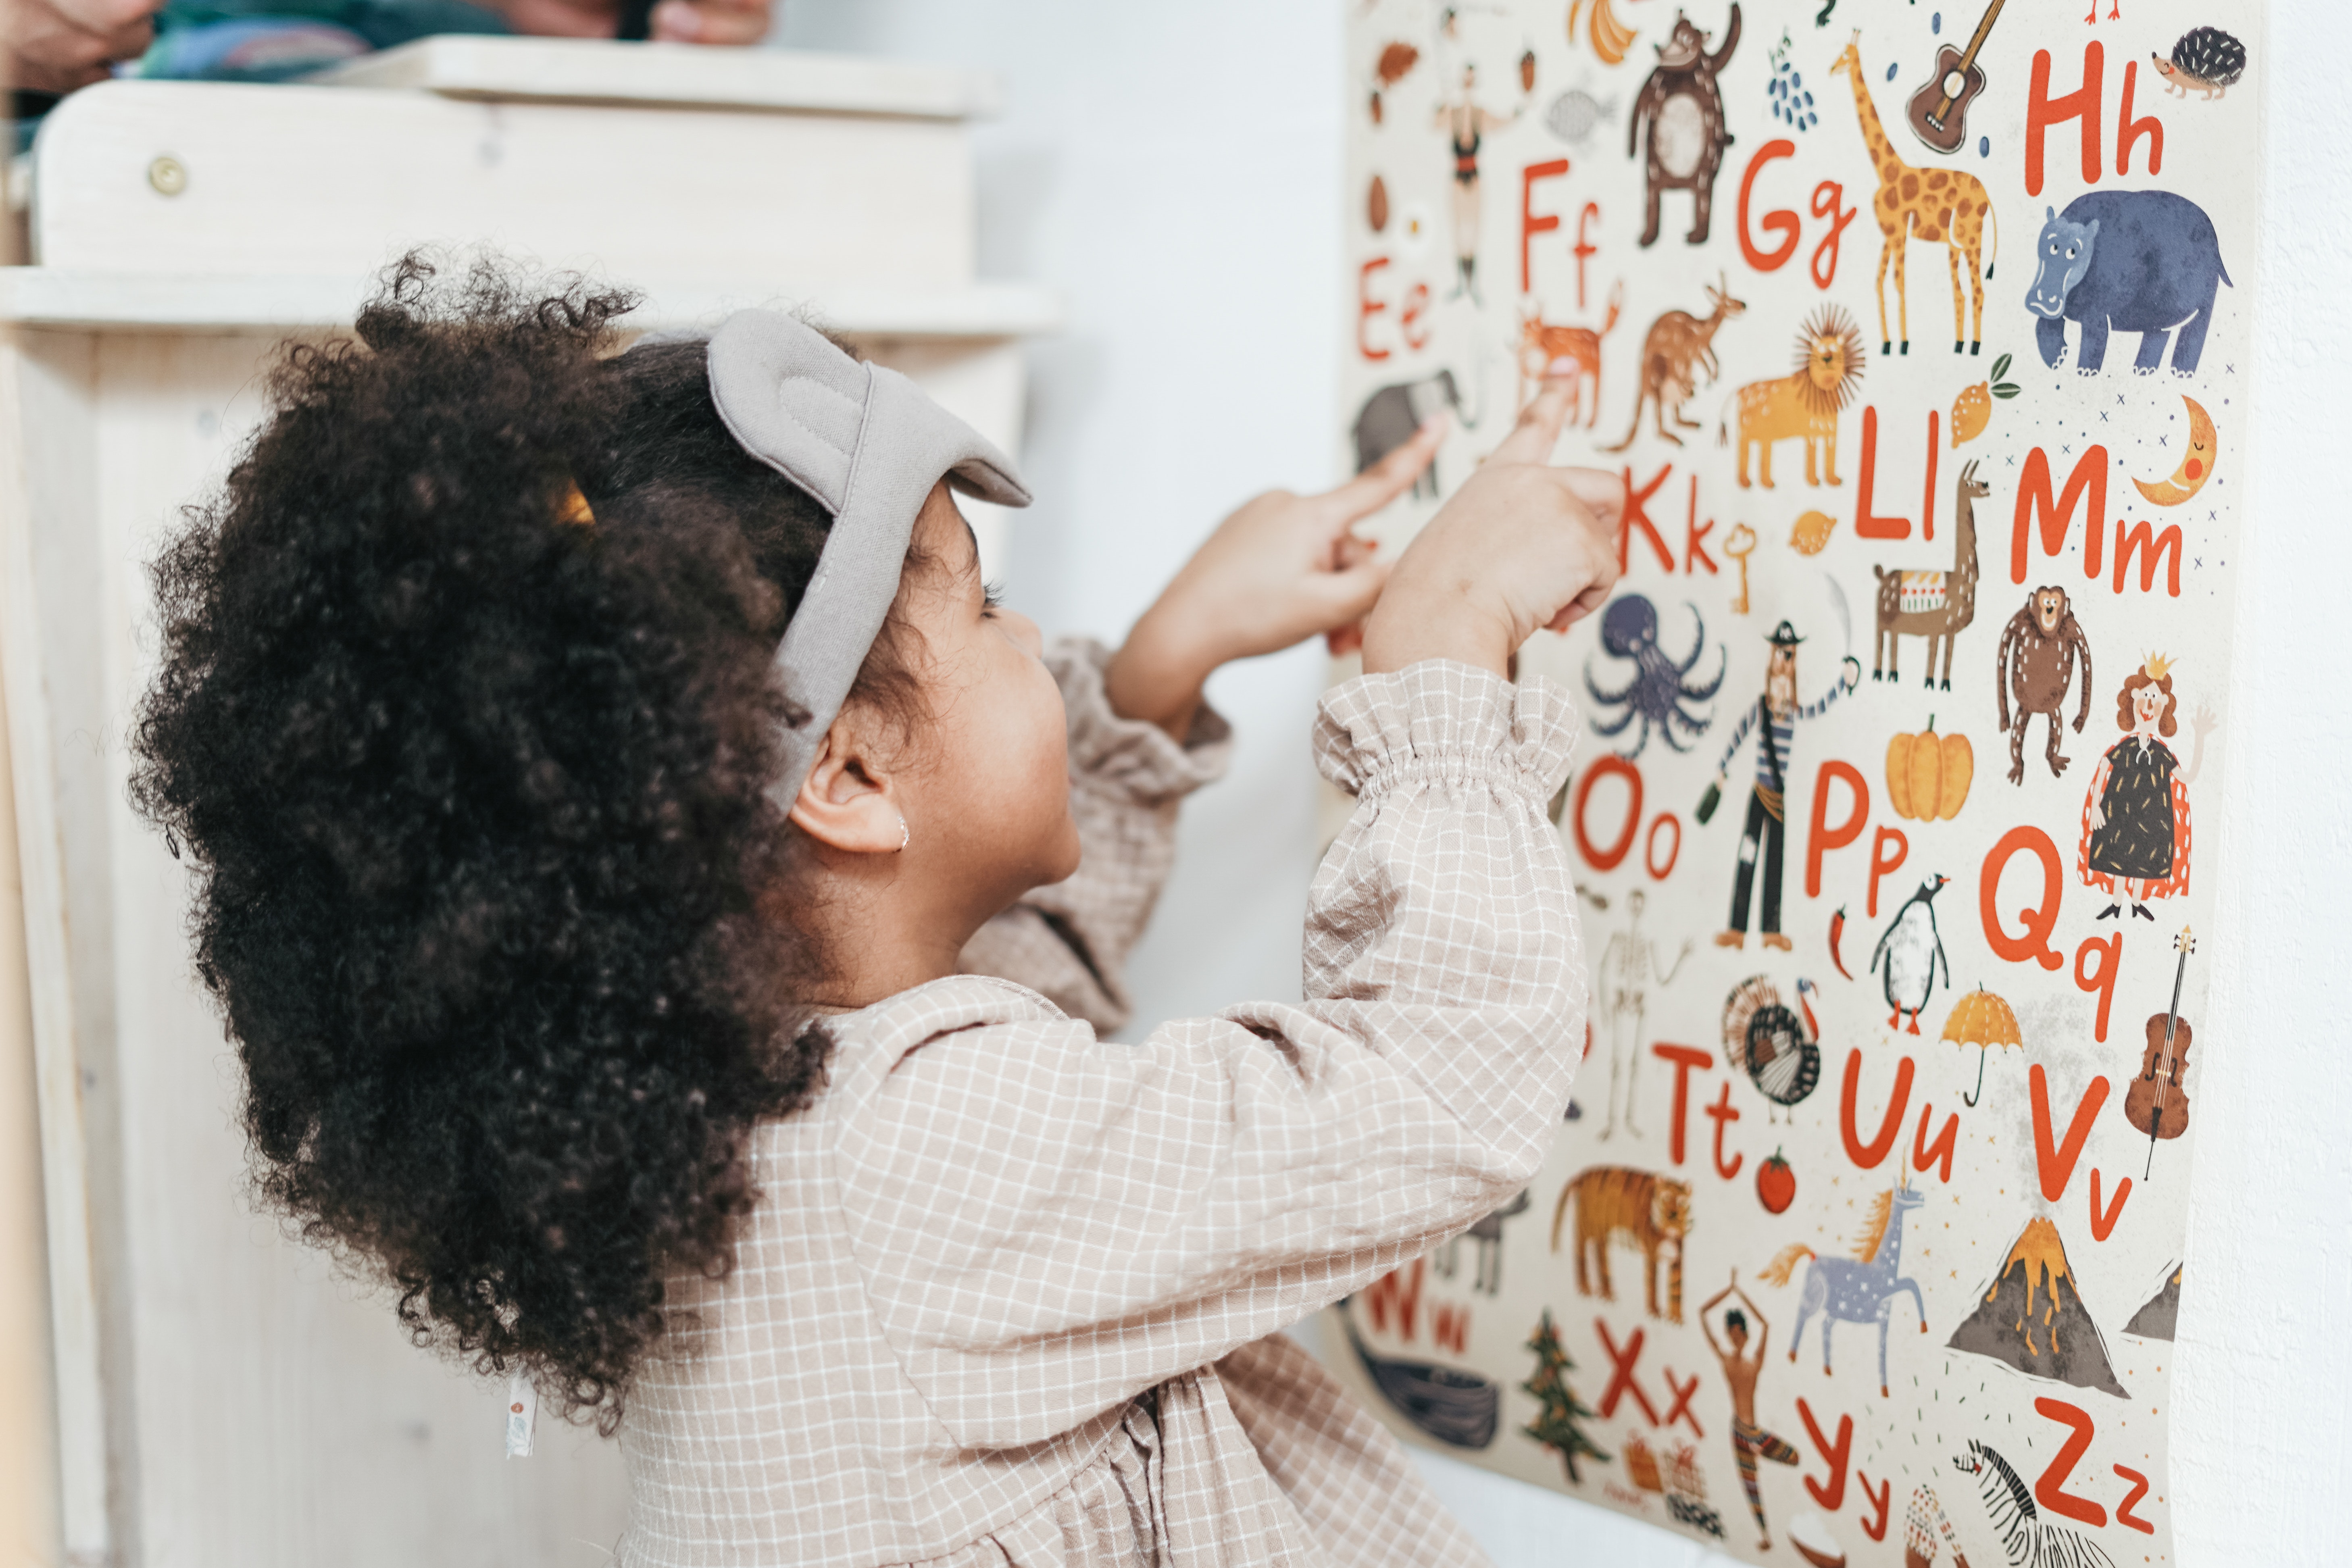 Uma menina de aproximadamente quatro anos está em frente a um painel cheio de letras do alfabeto. Todas as letras têm ao lado um animal, como girafa, elefante. 